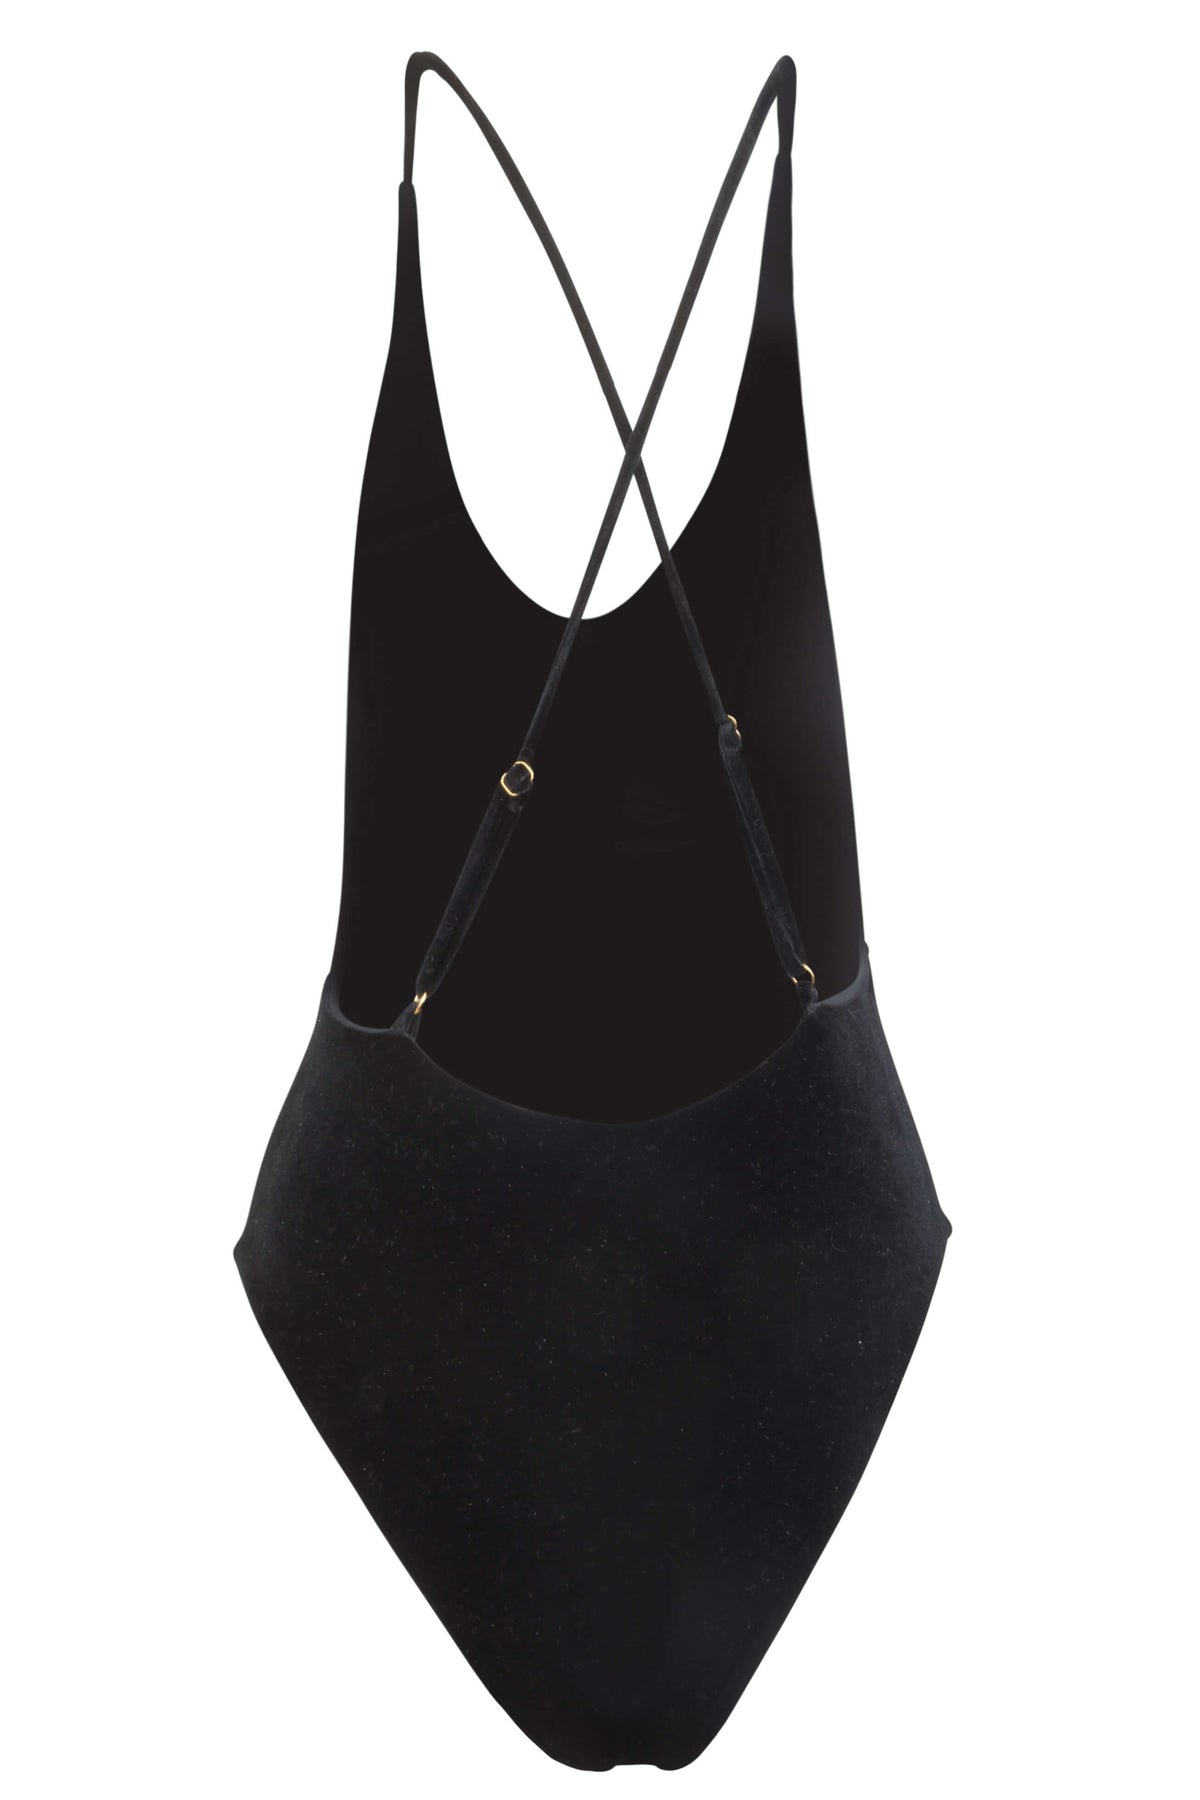 Back image of Zoe black velvet one piece showing the criss-cross, adjustable shoulder straps.